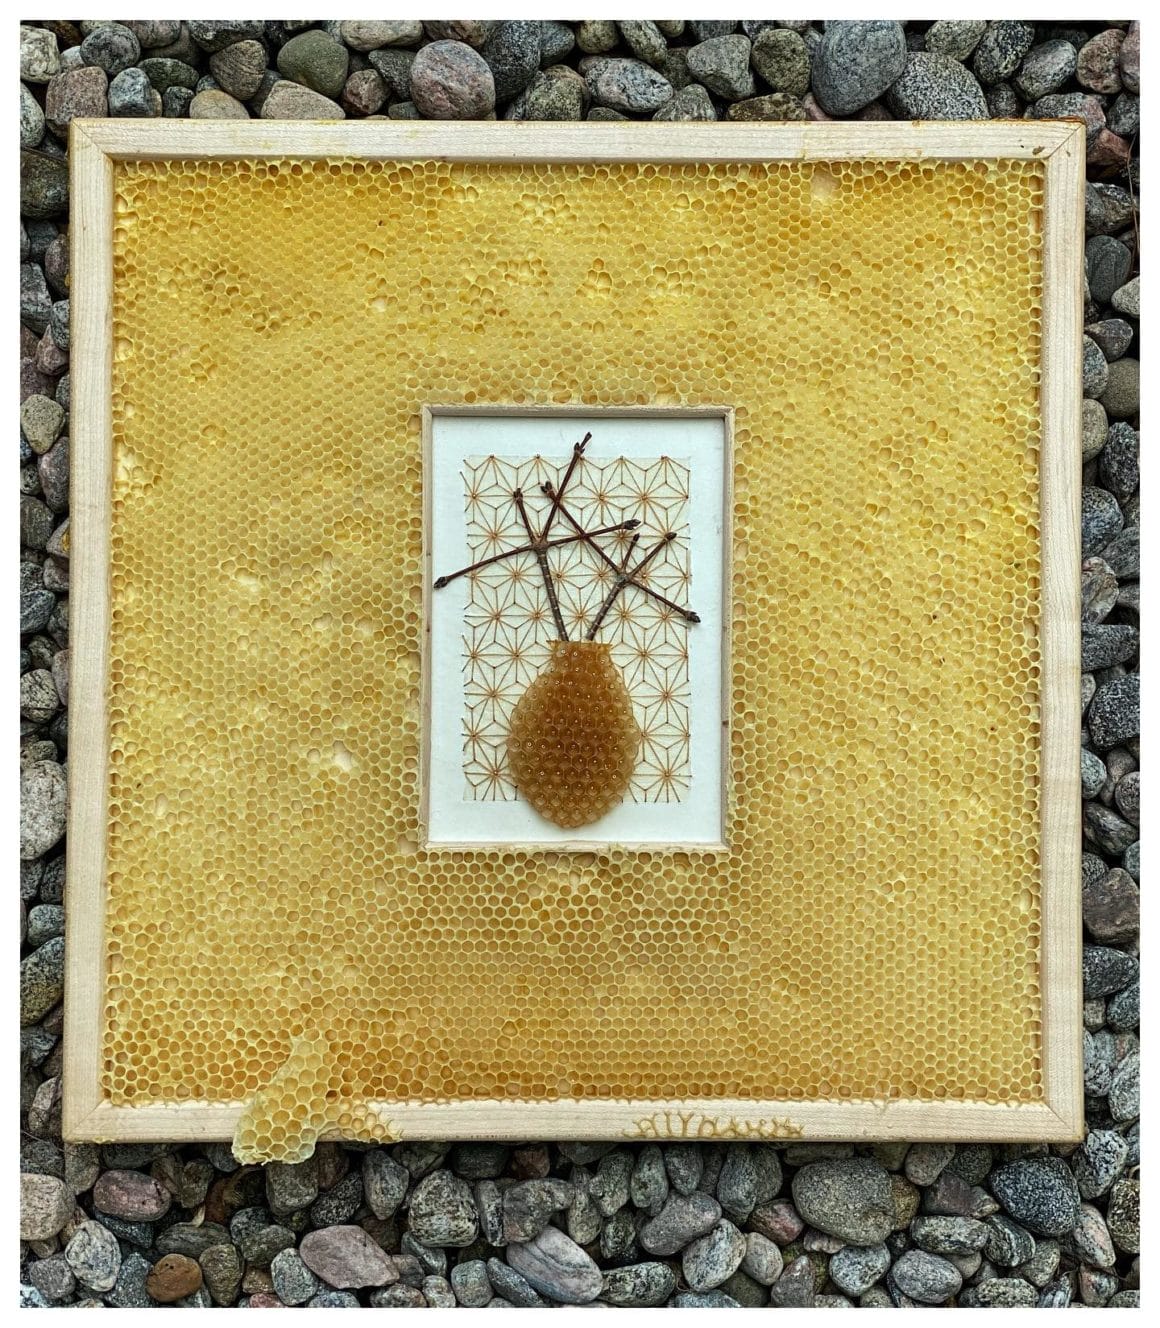 Cadre en bois avec des formes géométriques, des branches et un bout de ruche cousu sur du papier japonais. L'oeuvre est disposé dans une véritable ruche vide d'abeilles.